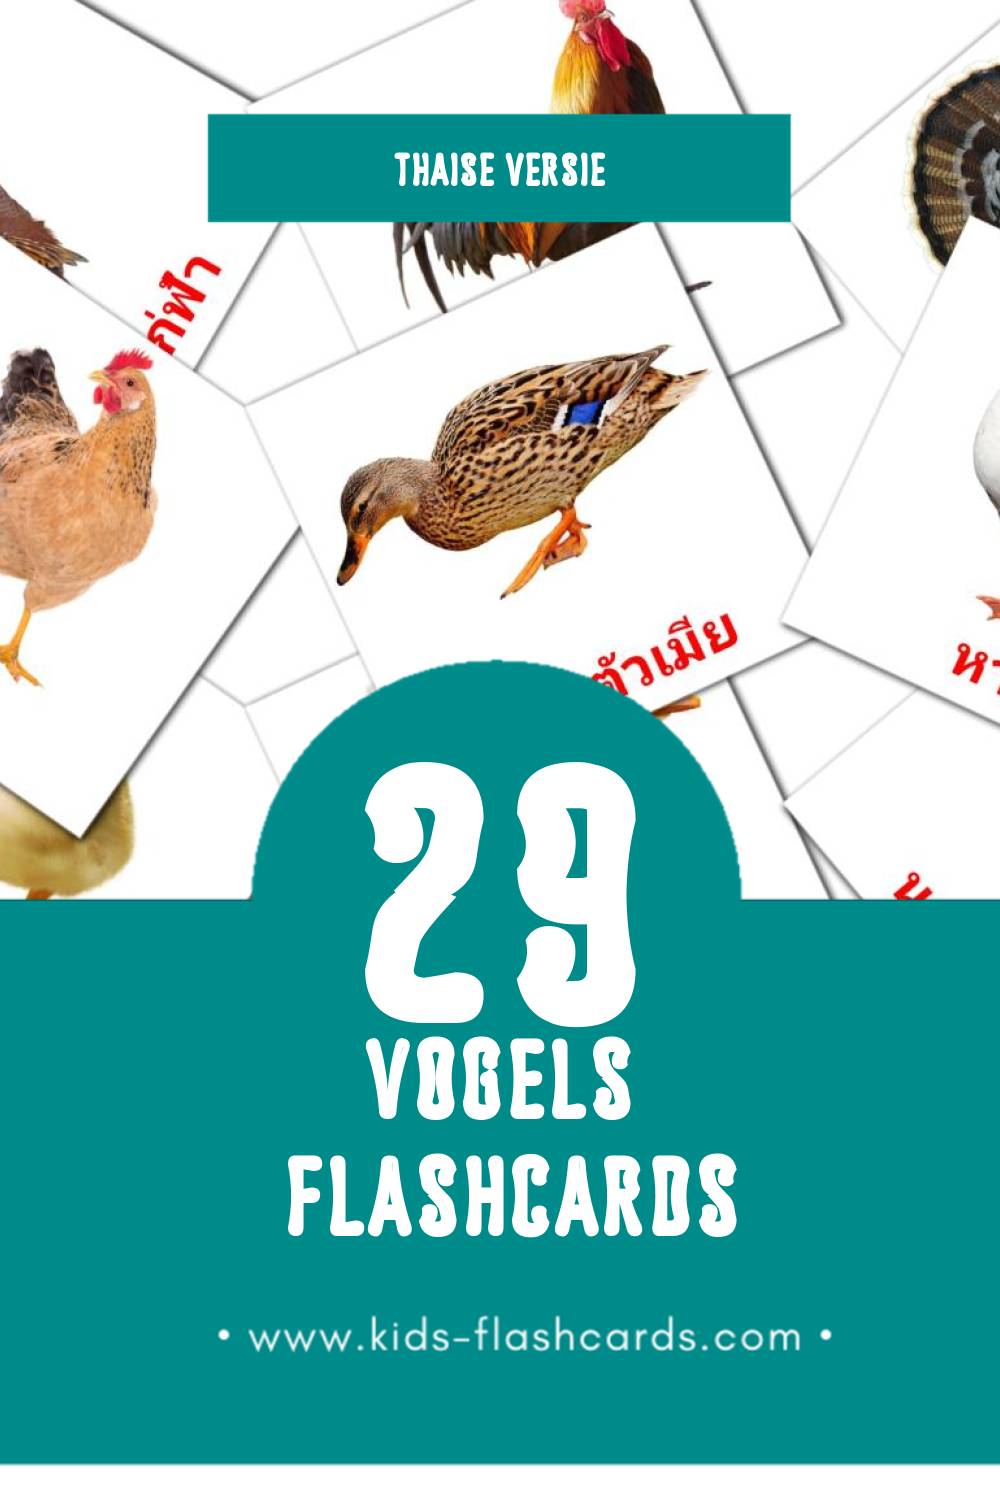 Visuele นก Flashcards voor Kleuters (29 kaarten in het Thais)